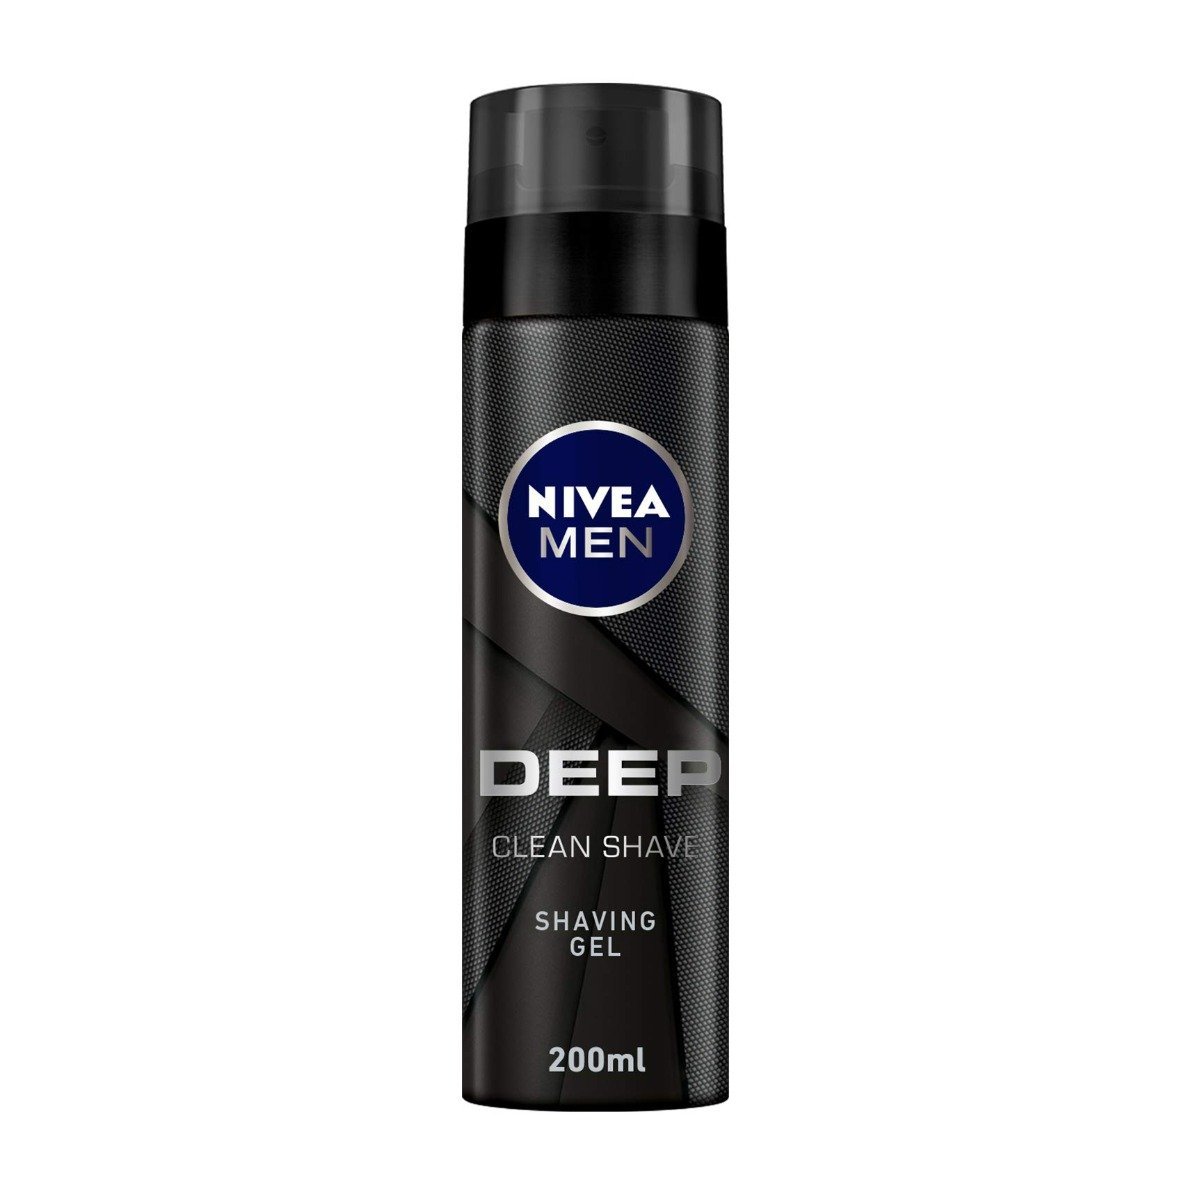 Nivea Men Deep Clean Shaving Gel - 200ml - Bloom Pharmacy